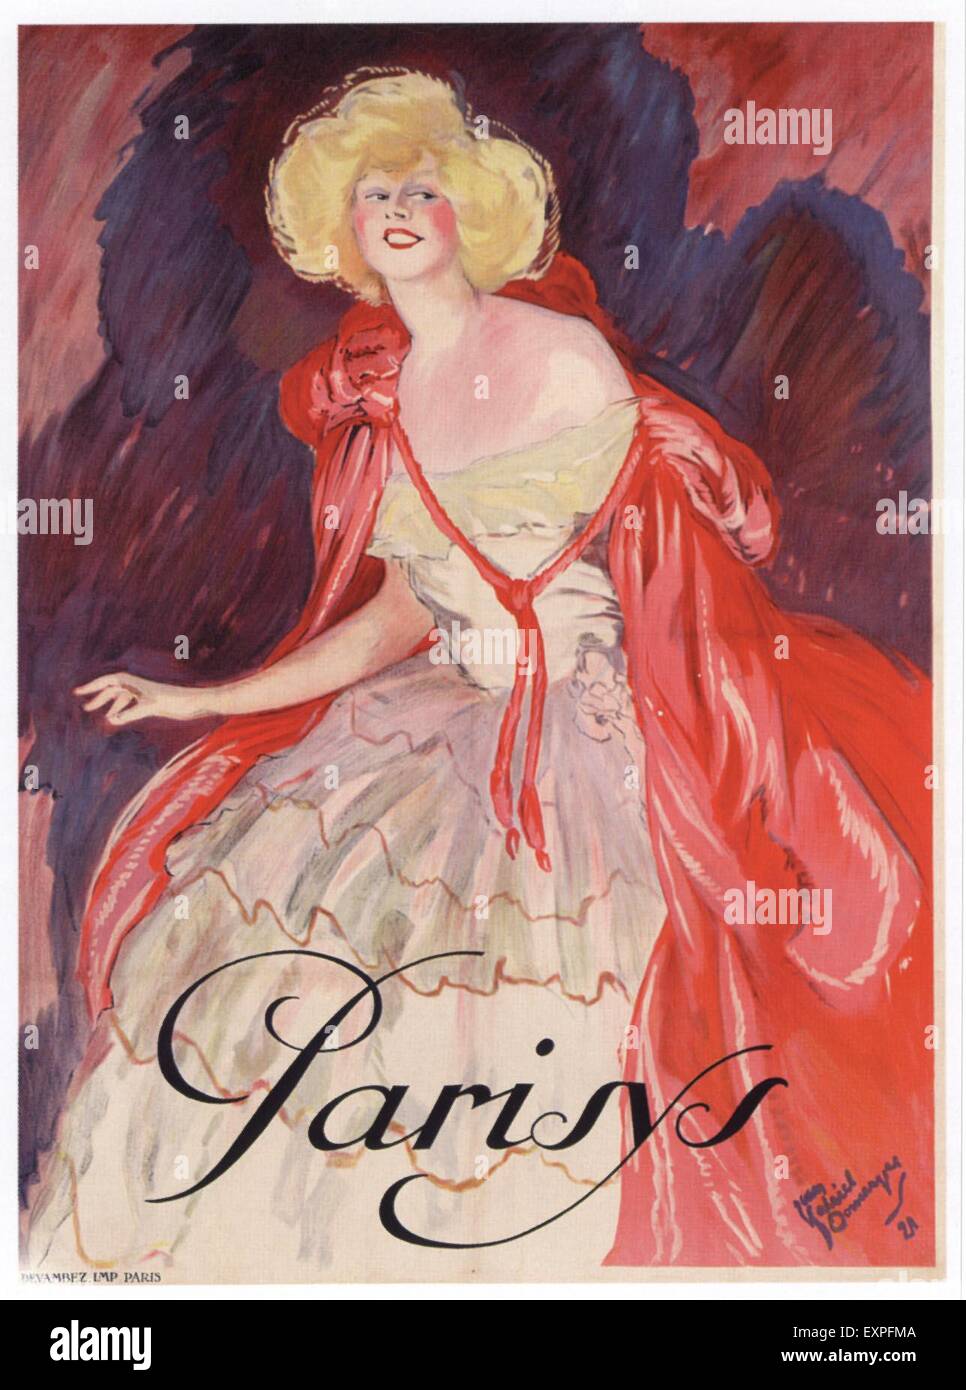 Années 1920, la France affiche de Parisys Banque D'Images